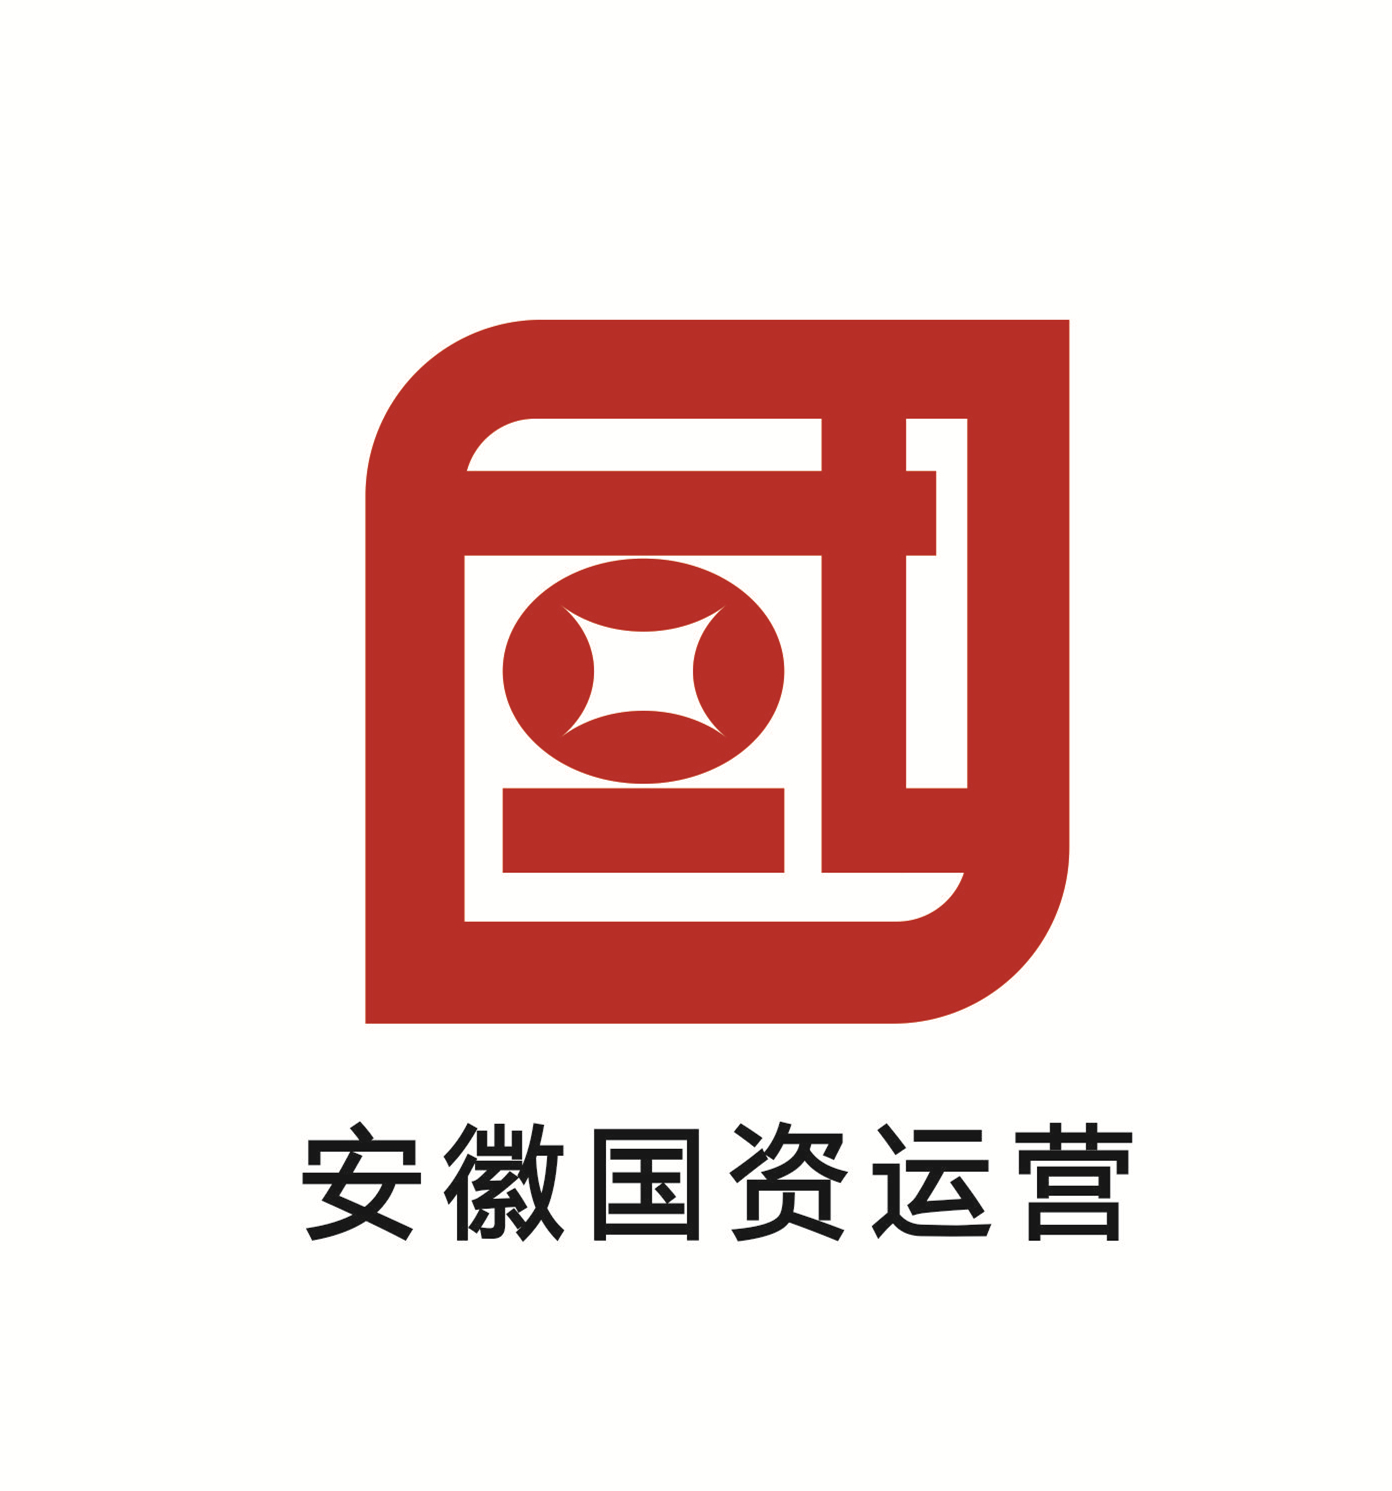 关于安徽省国有资本运营控股集团有限公司logo征集评审结果的公告